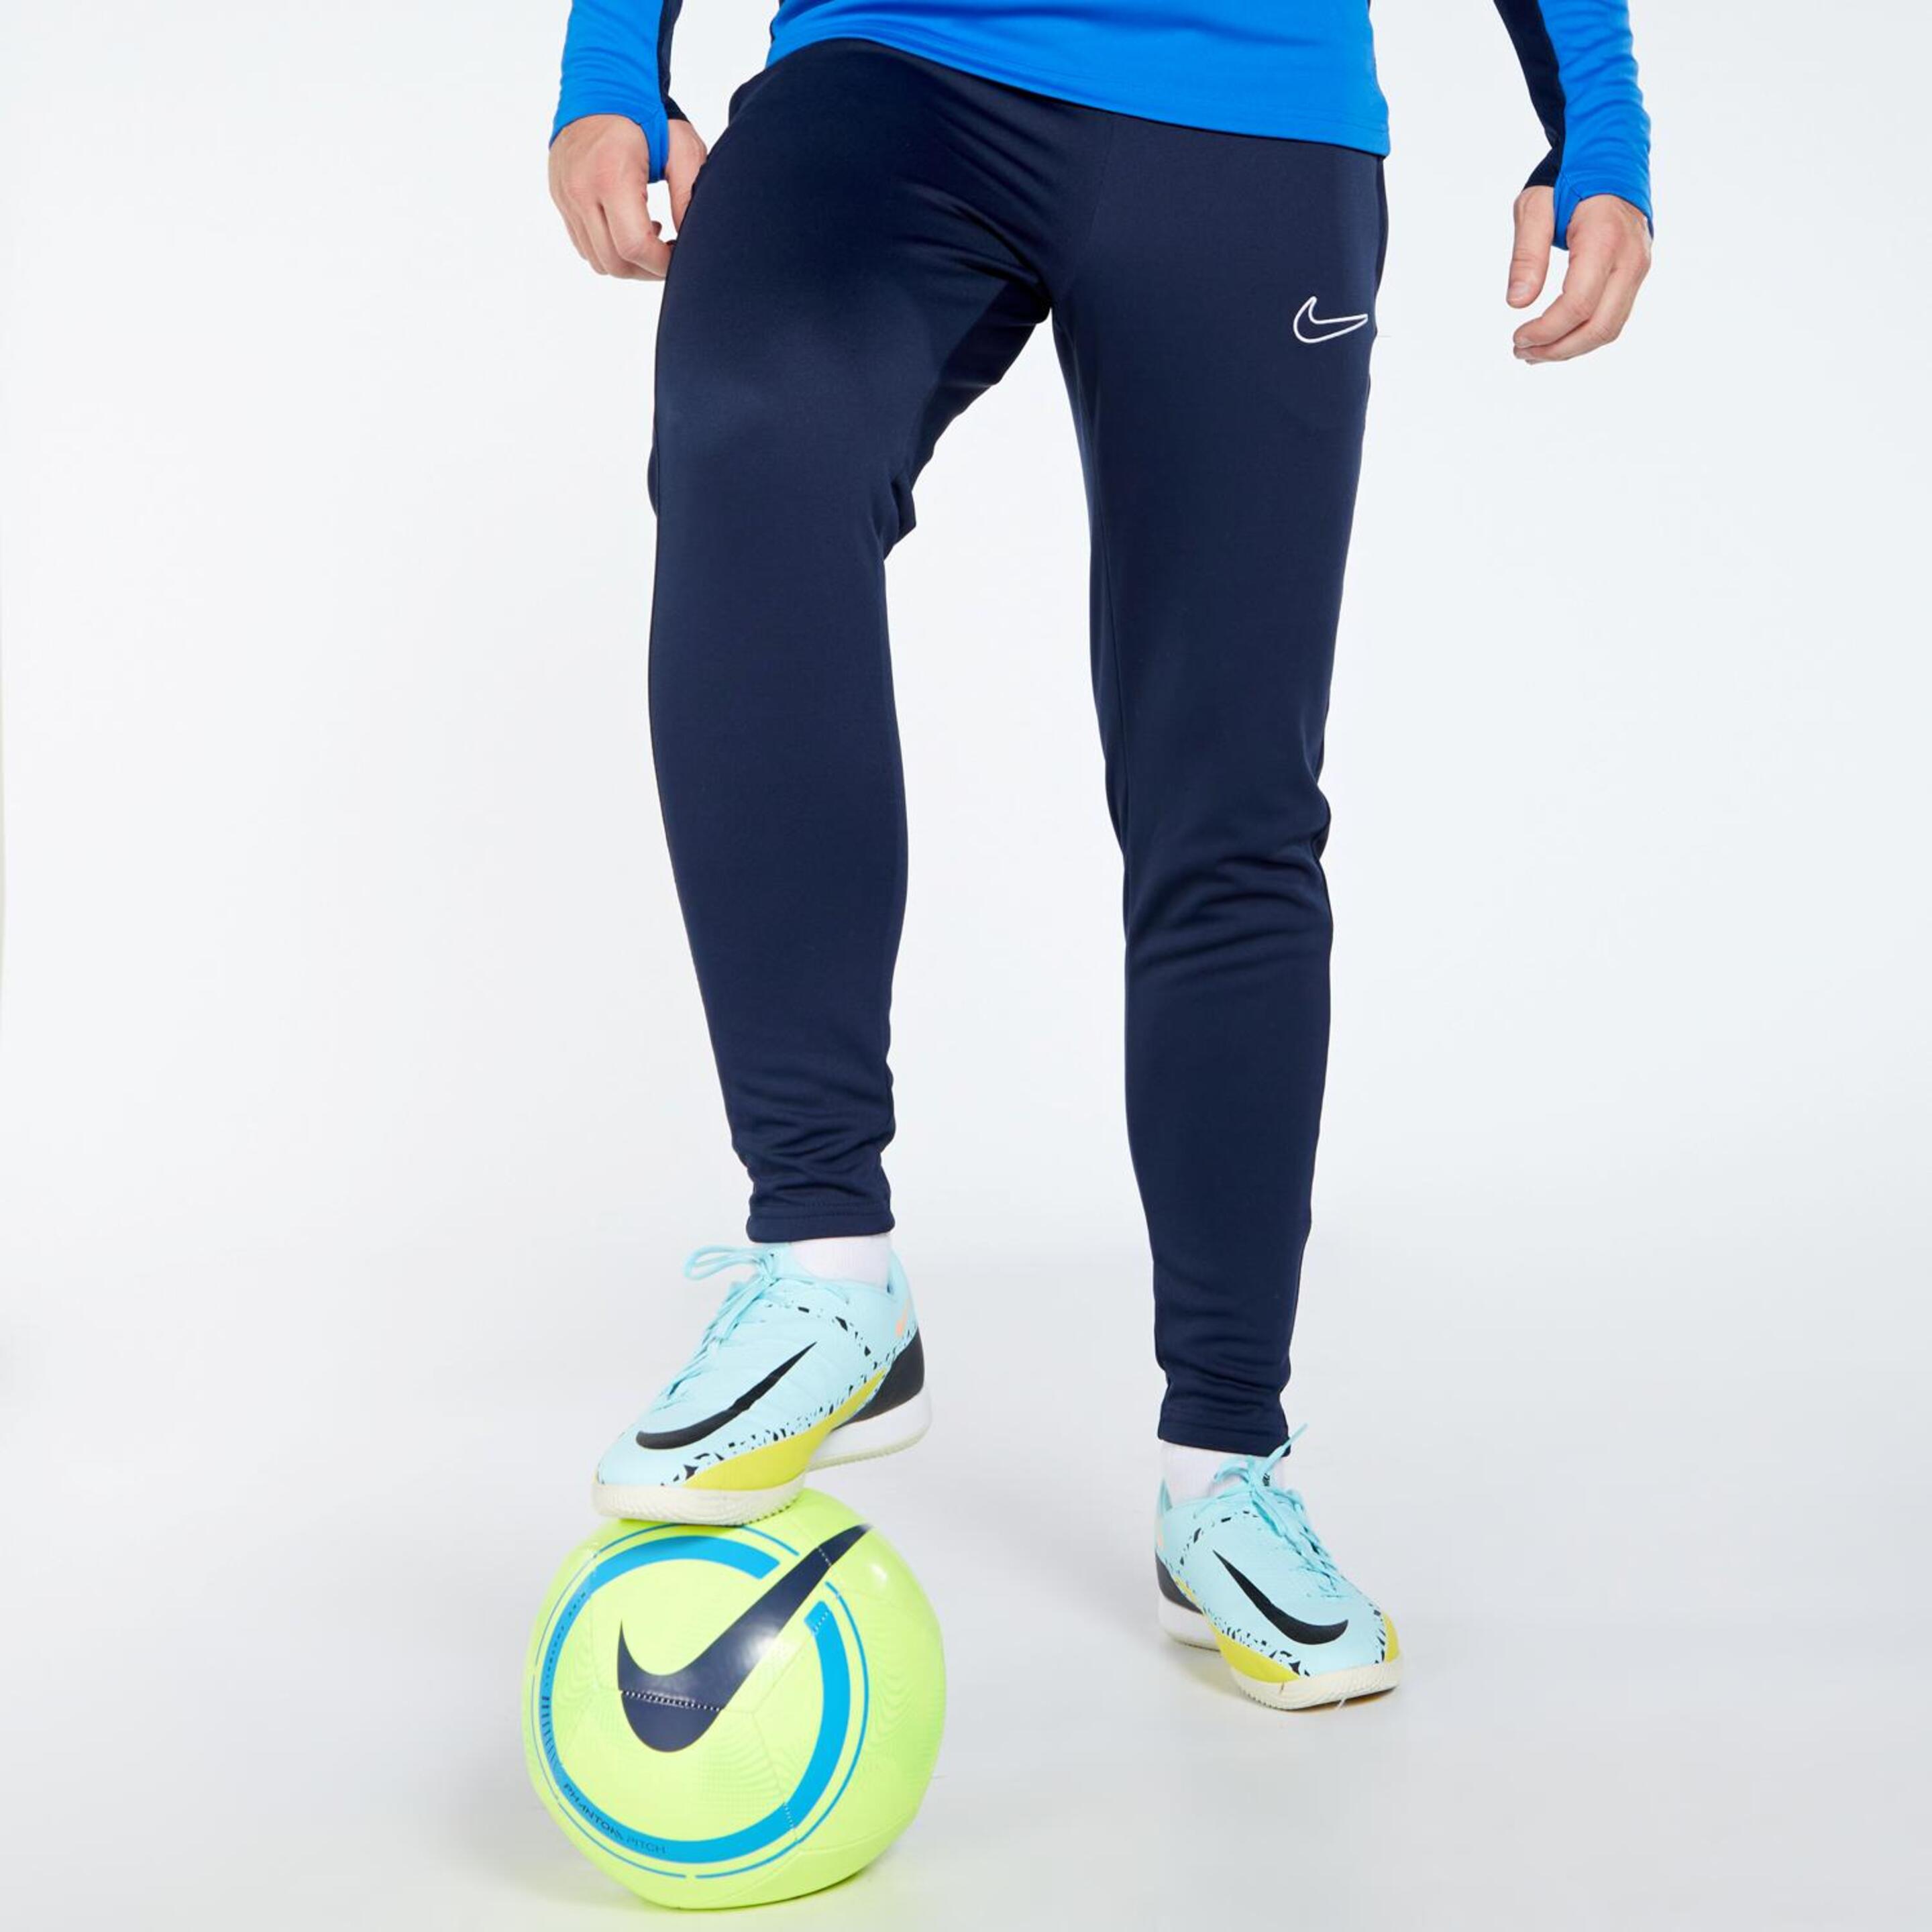 Nike Academy - azul - Pantalón Chándal Hombre